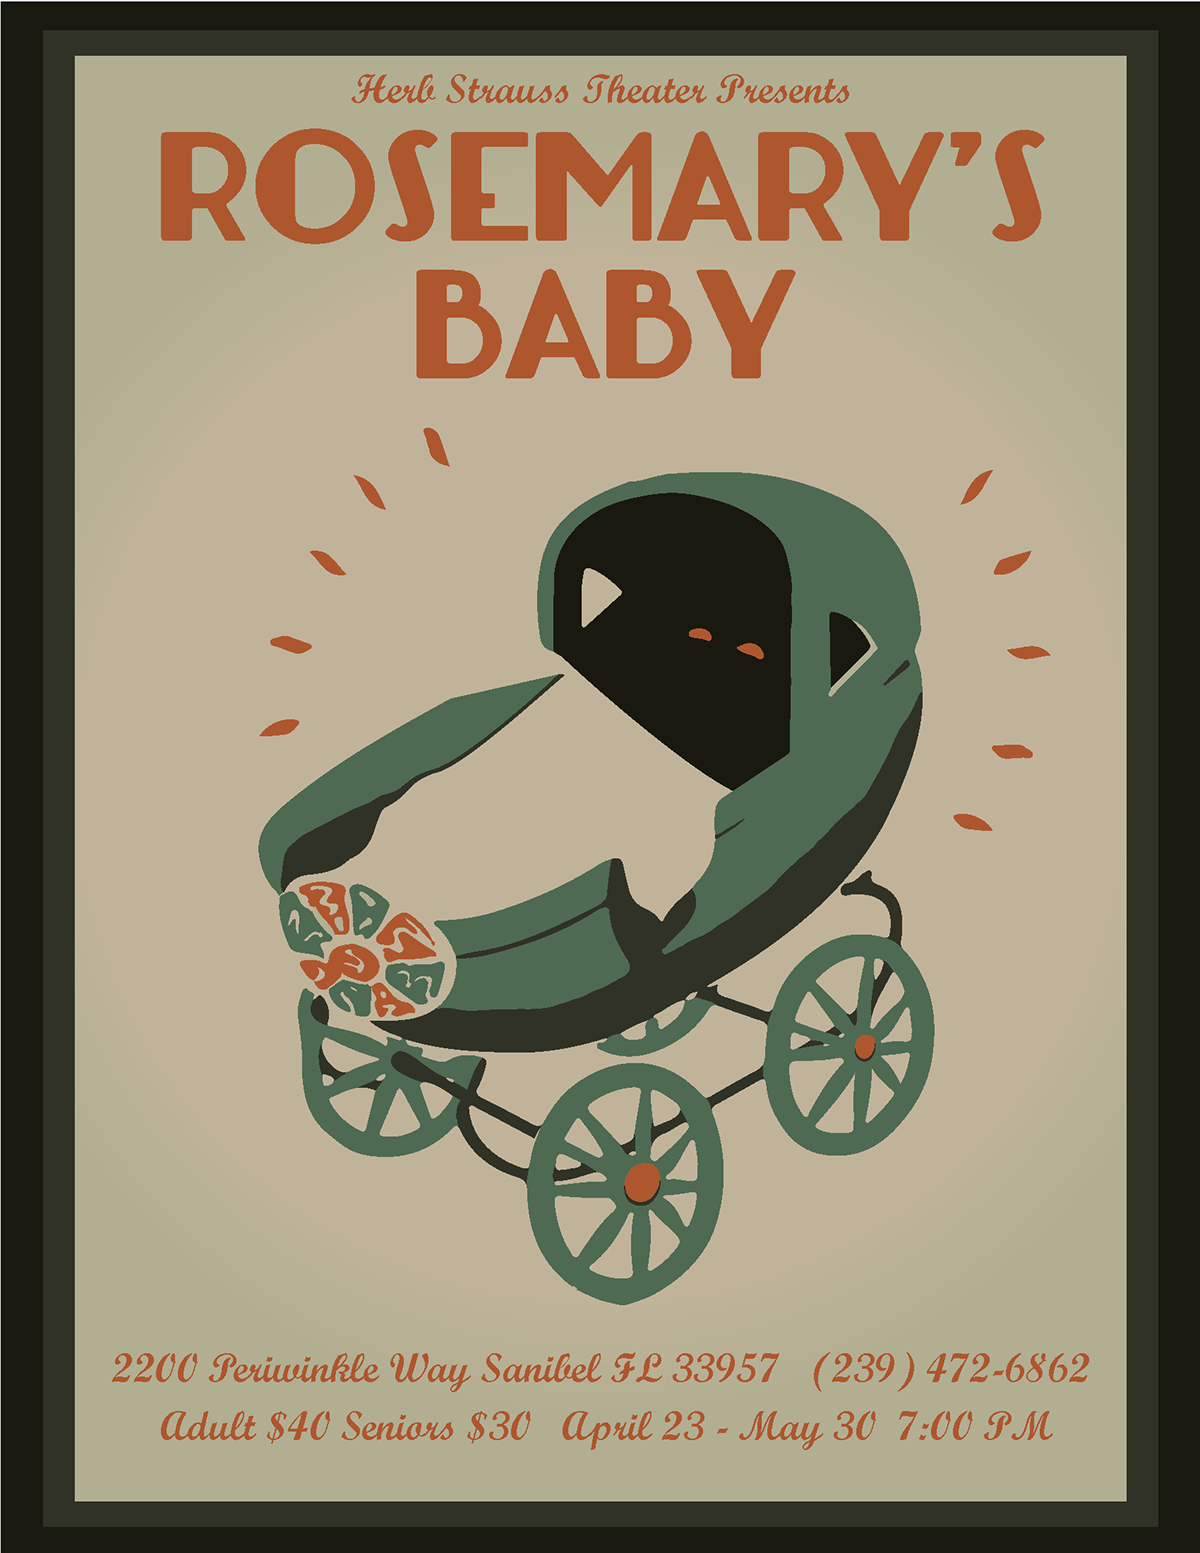 wpa Illustrator Rosemarys Baby emily minoui poster design